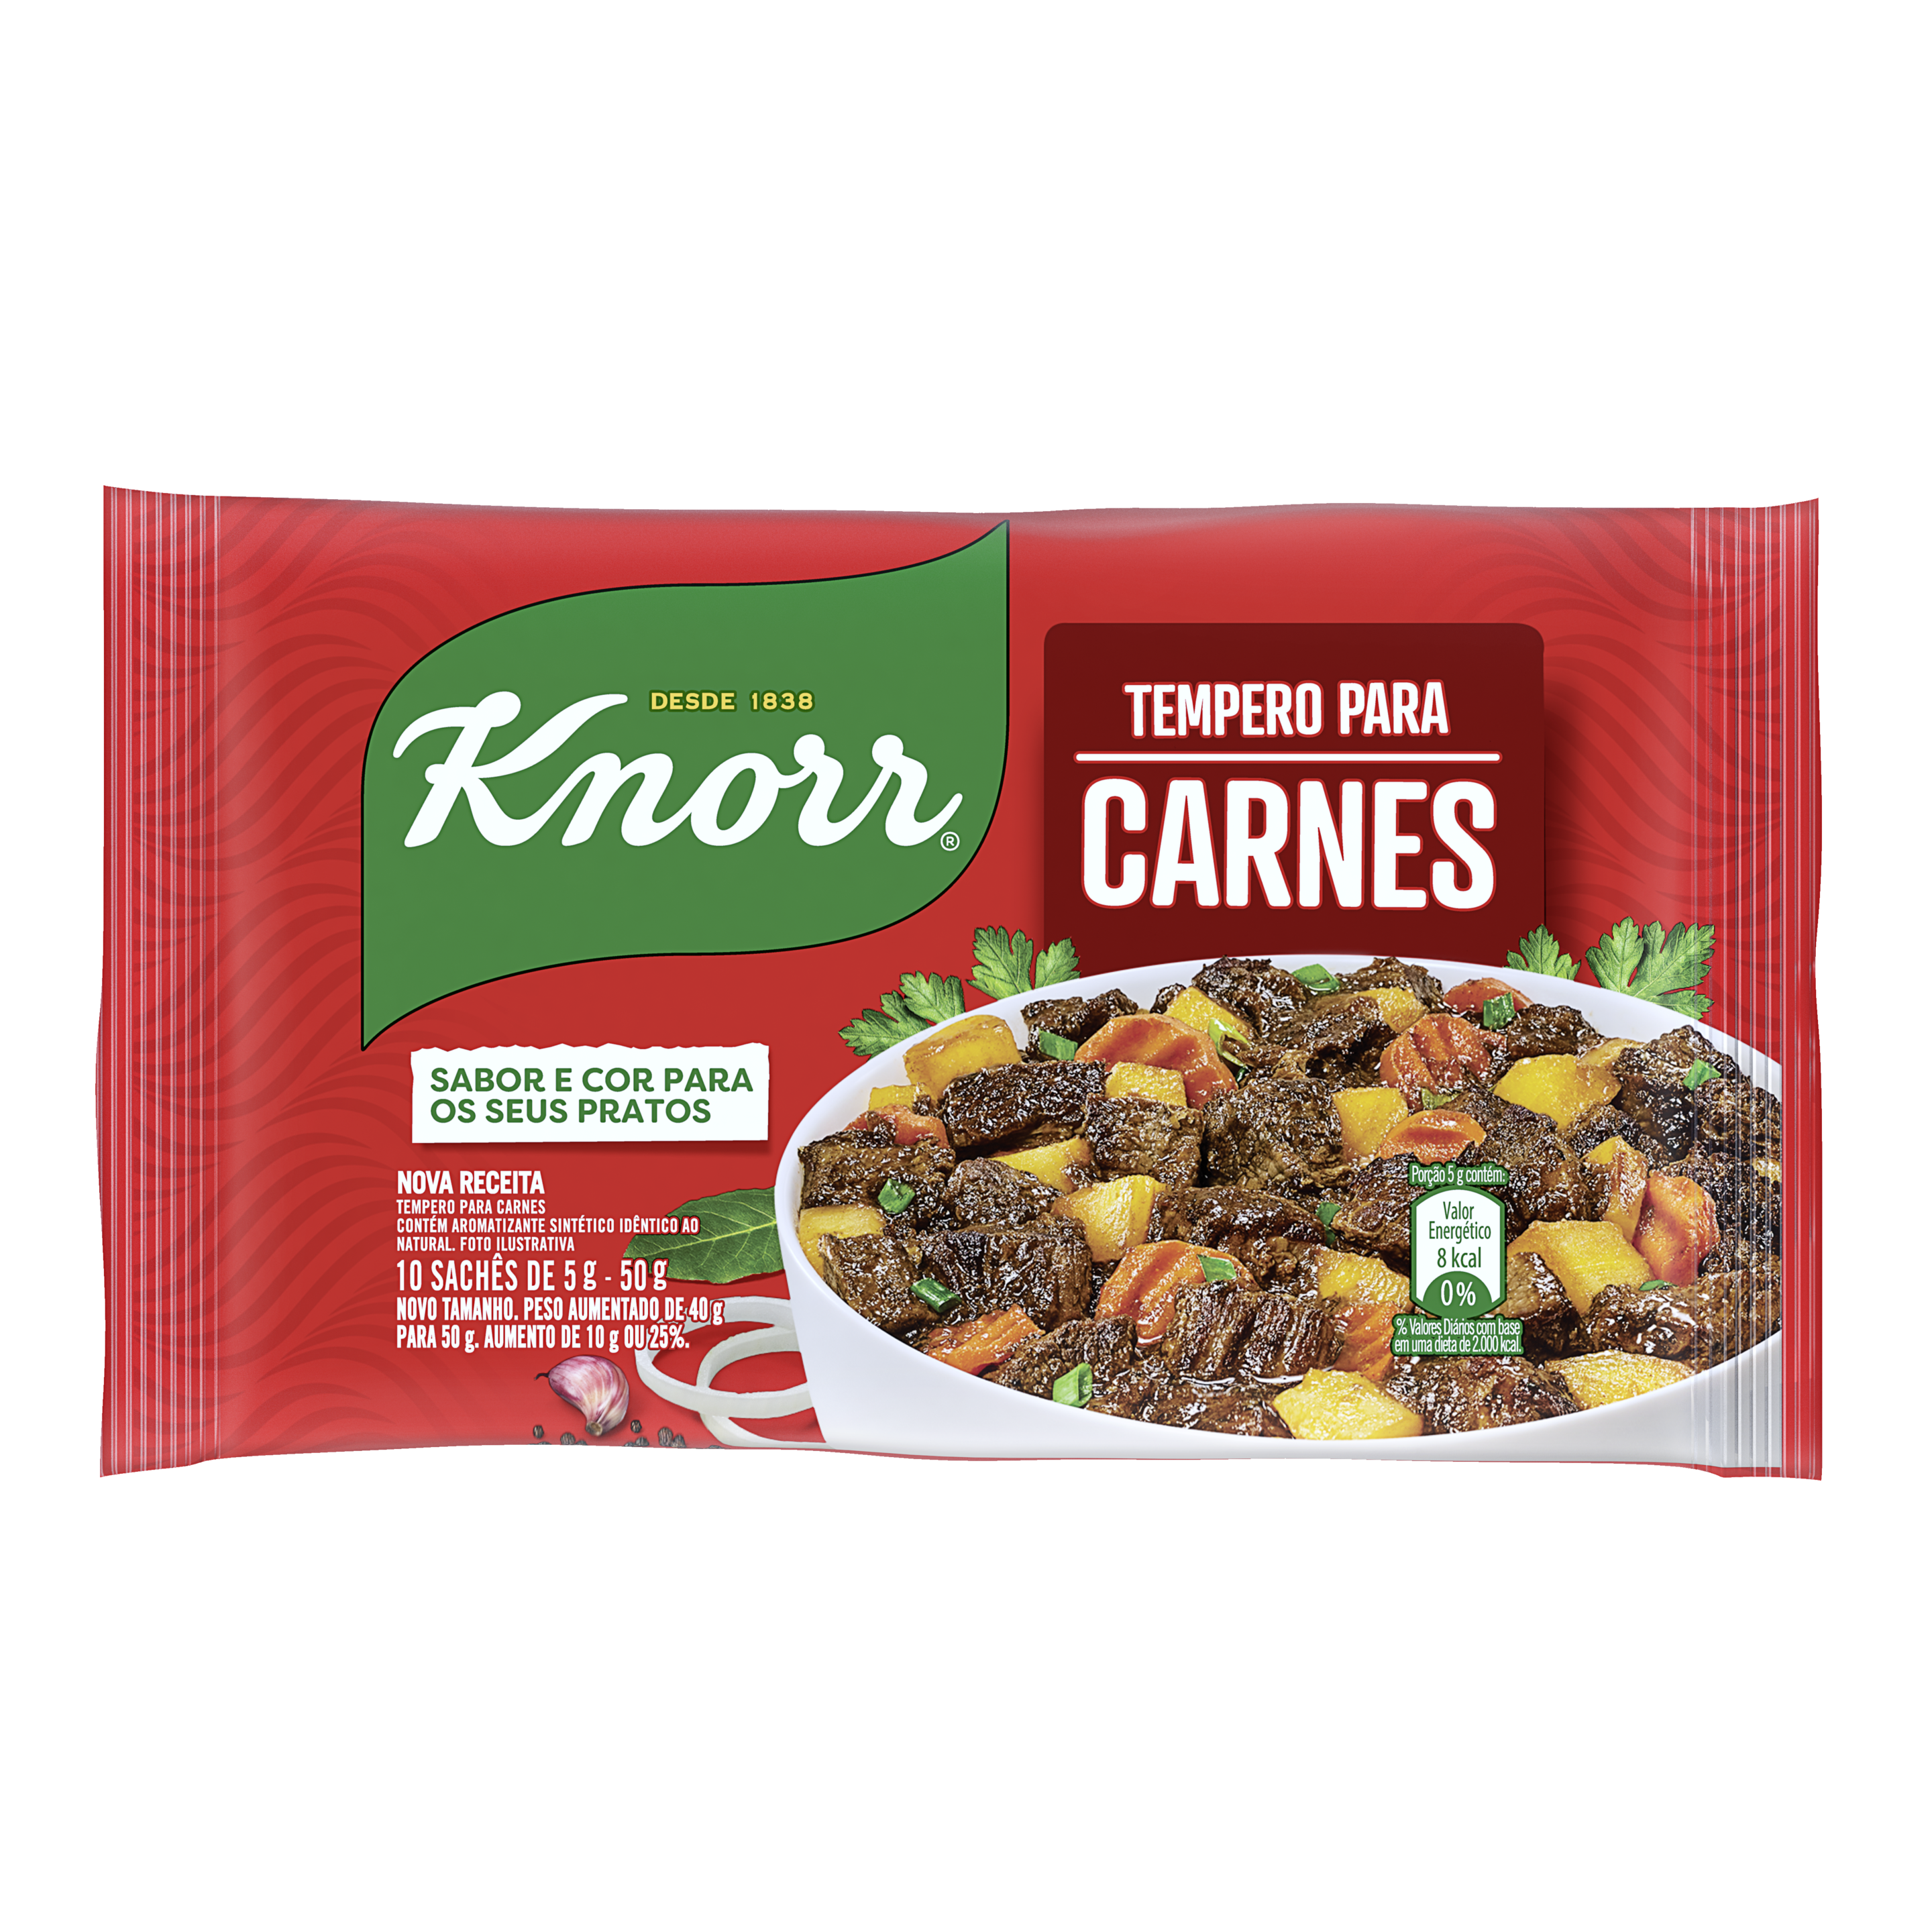 Emabalagem do Tempero para Carnes Knorr